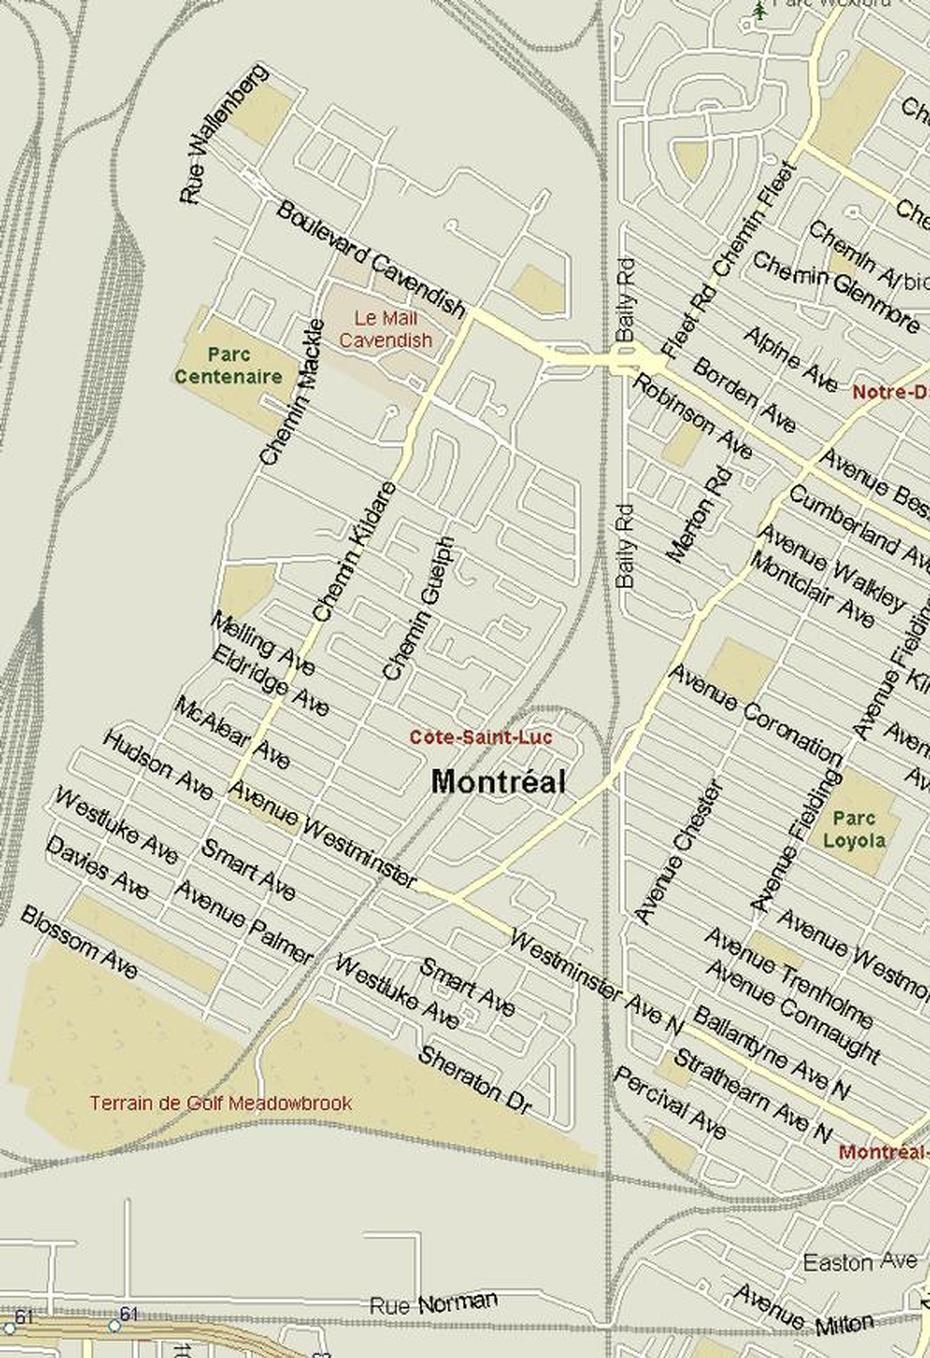 Cote St-Luc, Cote Saint-Luc Montreal, Listings Canada, Côte-Saint-Luc, Canada